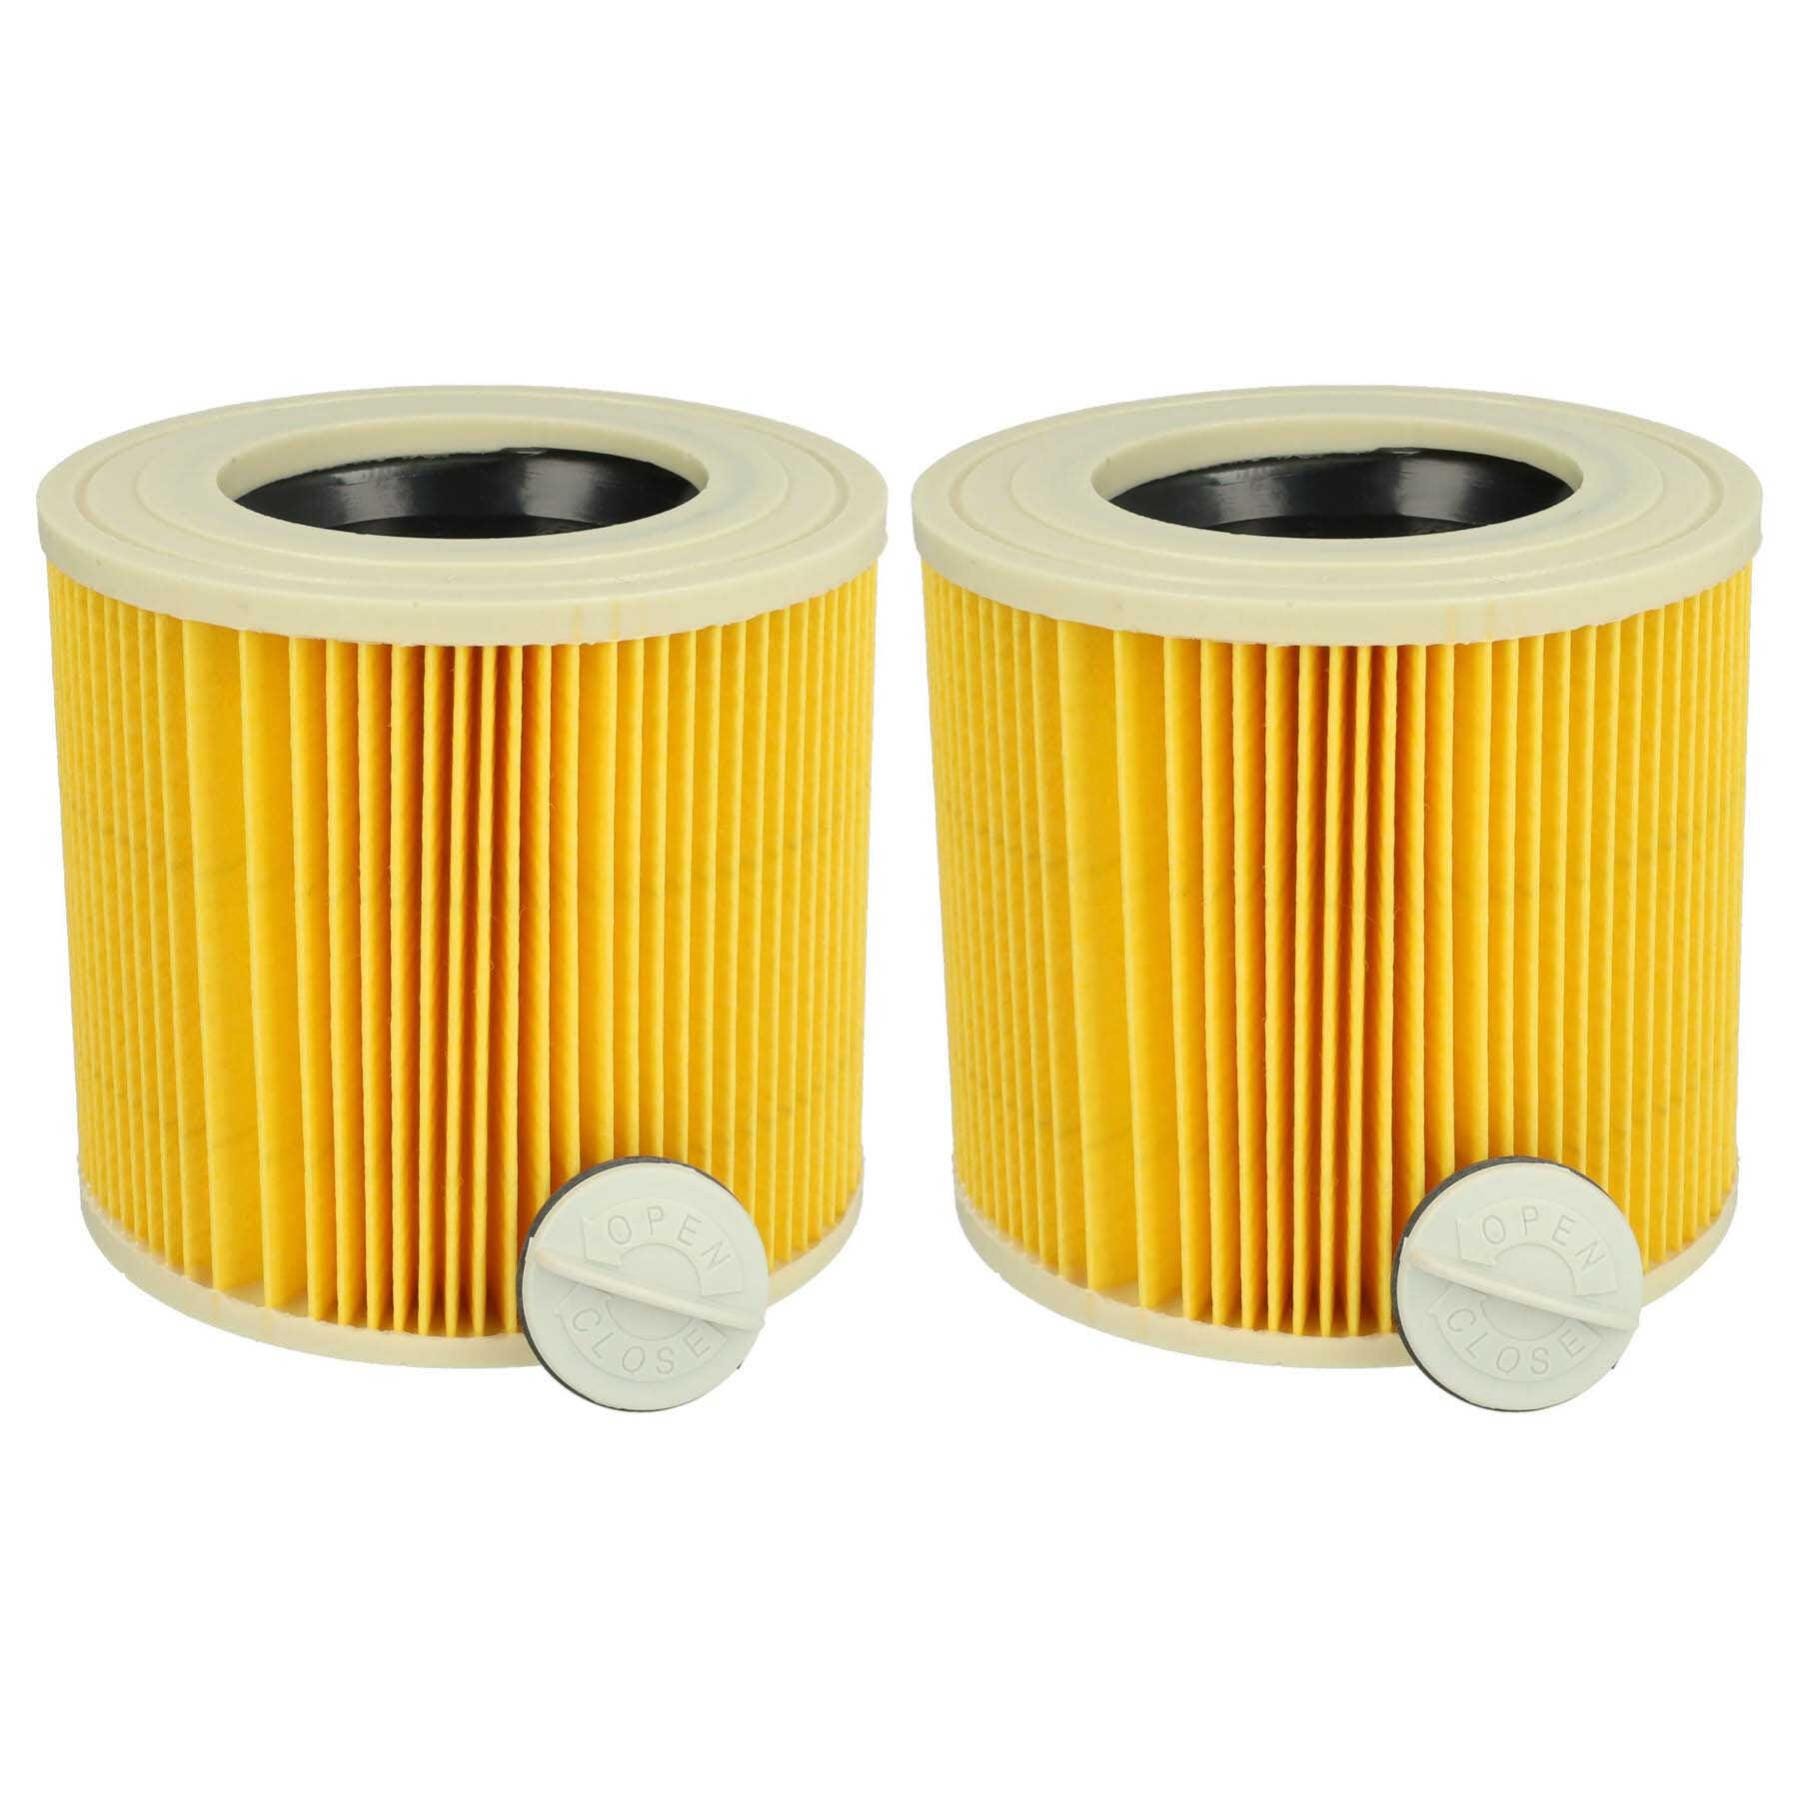 Vhbw Lot de 2x filtres à cartouche compatible avec Kärcher WD 3, WD 3.200,  WD 2500 M aspirateur à sec ou humide - Filtre plissé, jaune